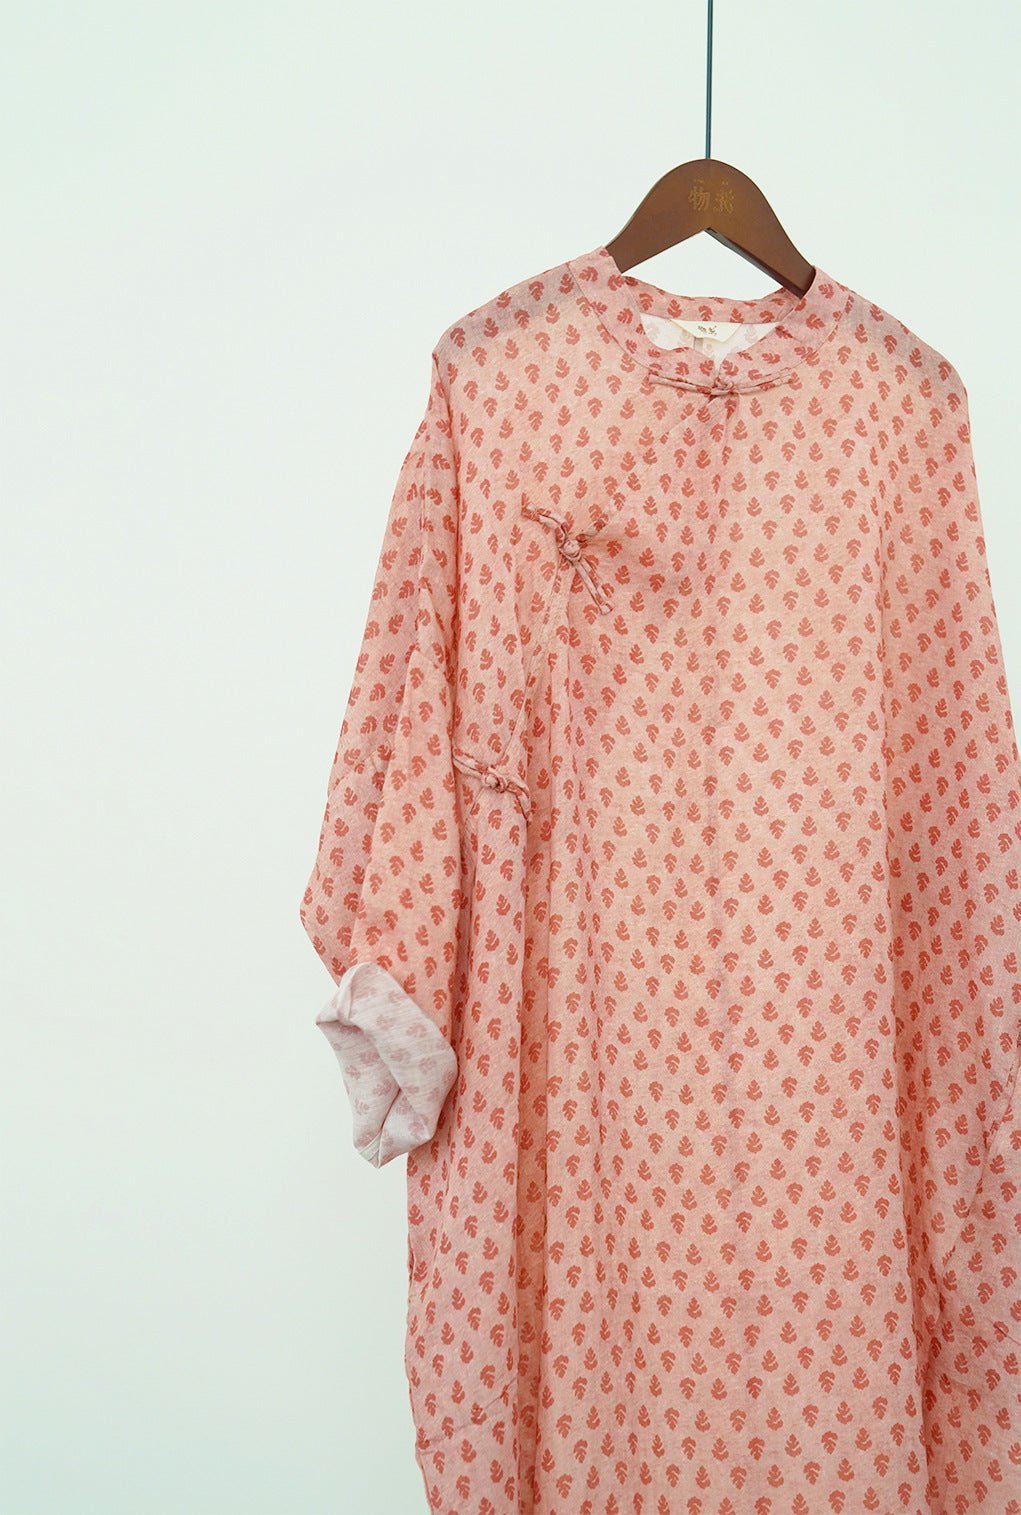 Dusty Pink Leafy Cheongsam Cocoon Dress